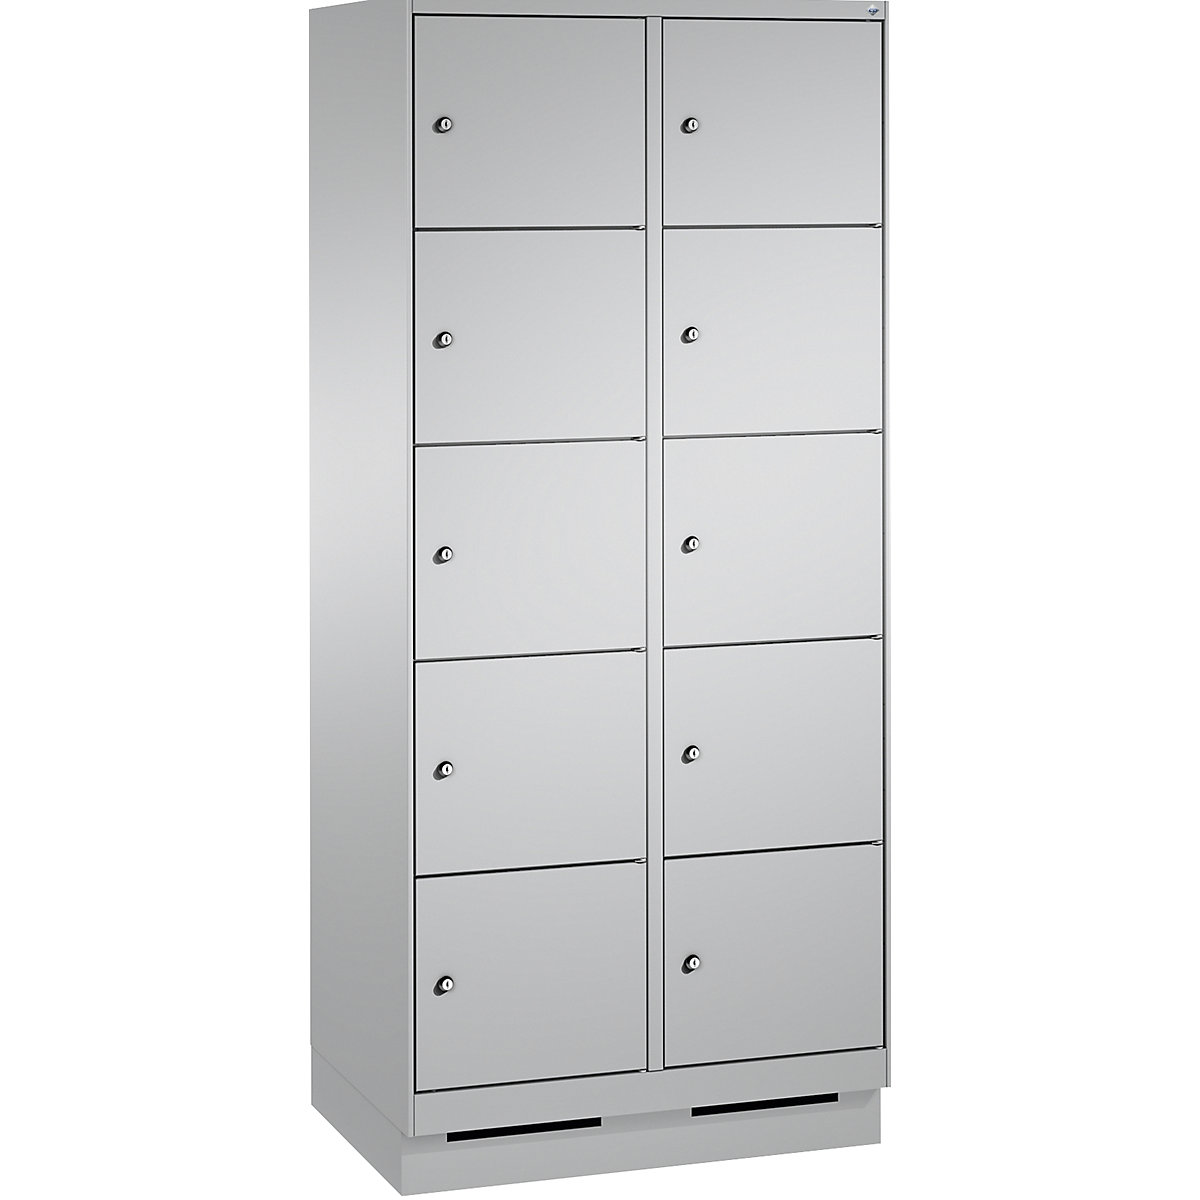 Armoire à casiers sur socle EVOLO – C+P, 2 compartiments, 5 casiers chacun, largeur compartiments 400 mm, aluminium / aluminium-8